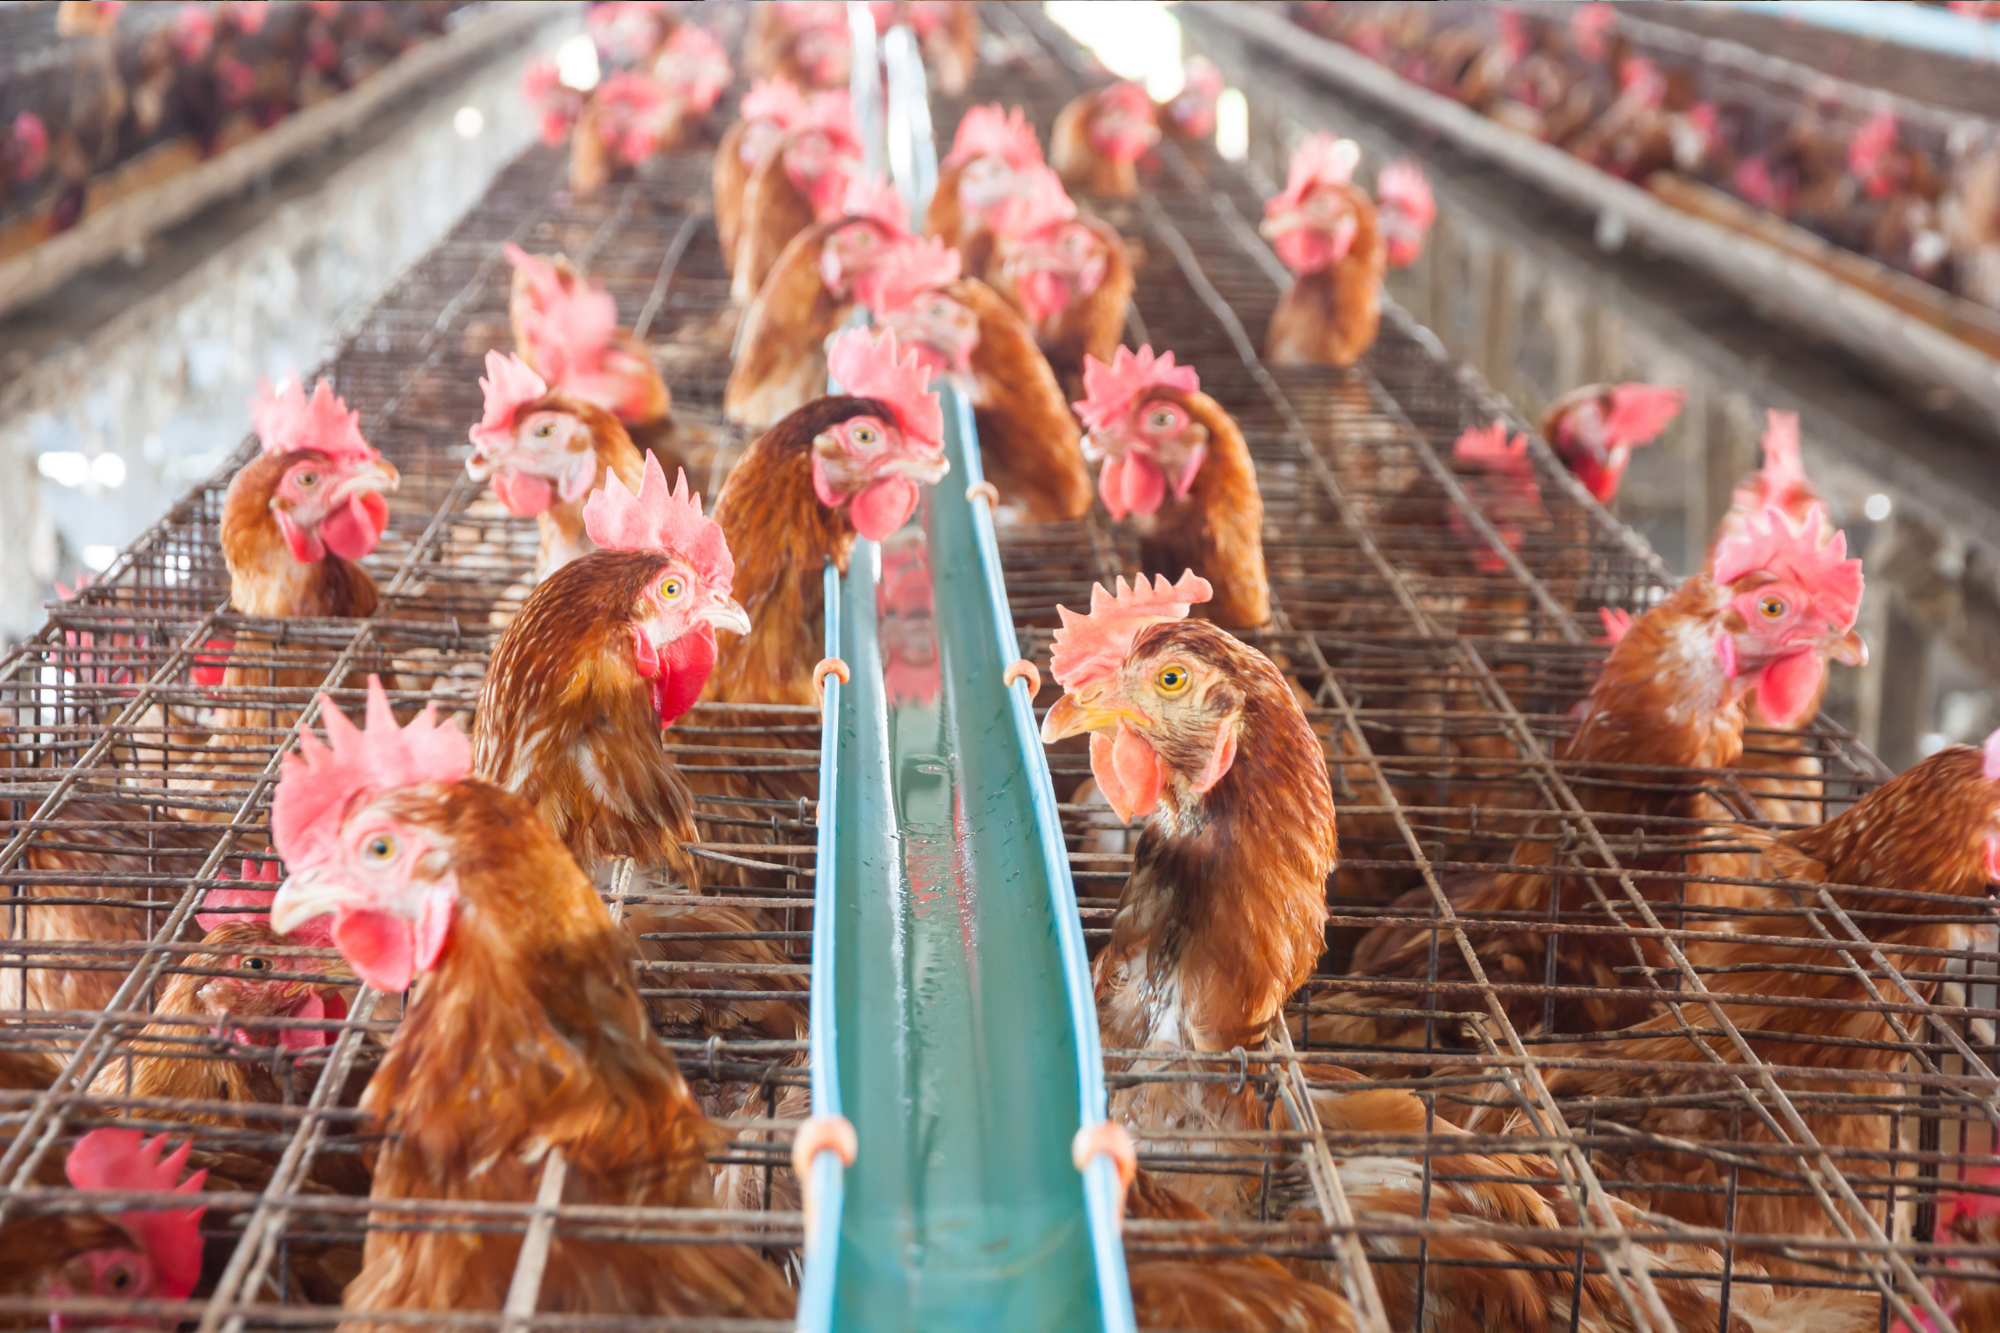 gripe aviar en macrogranjas